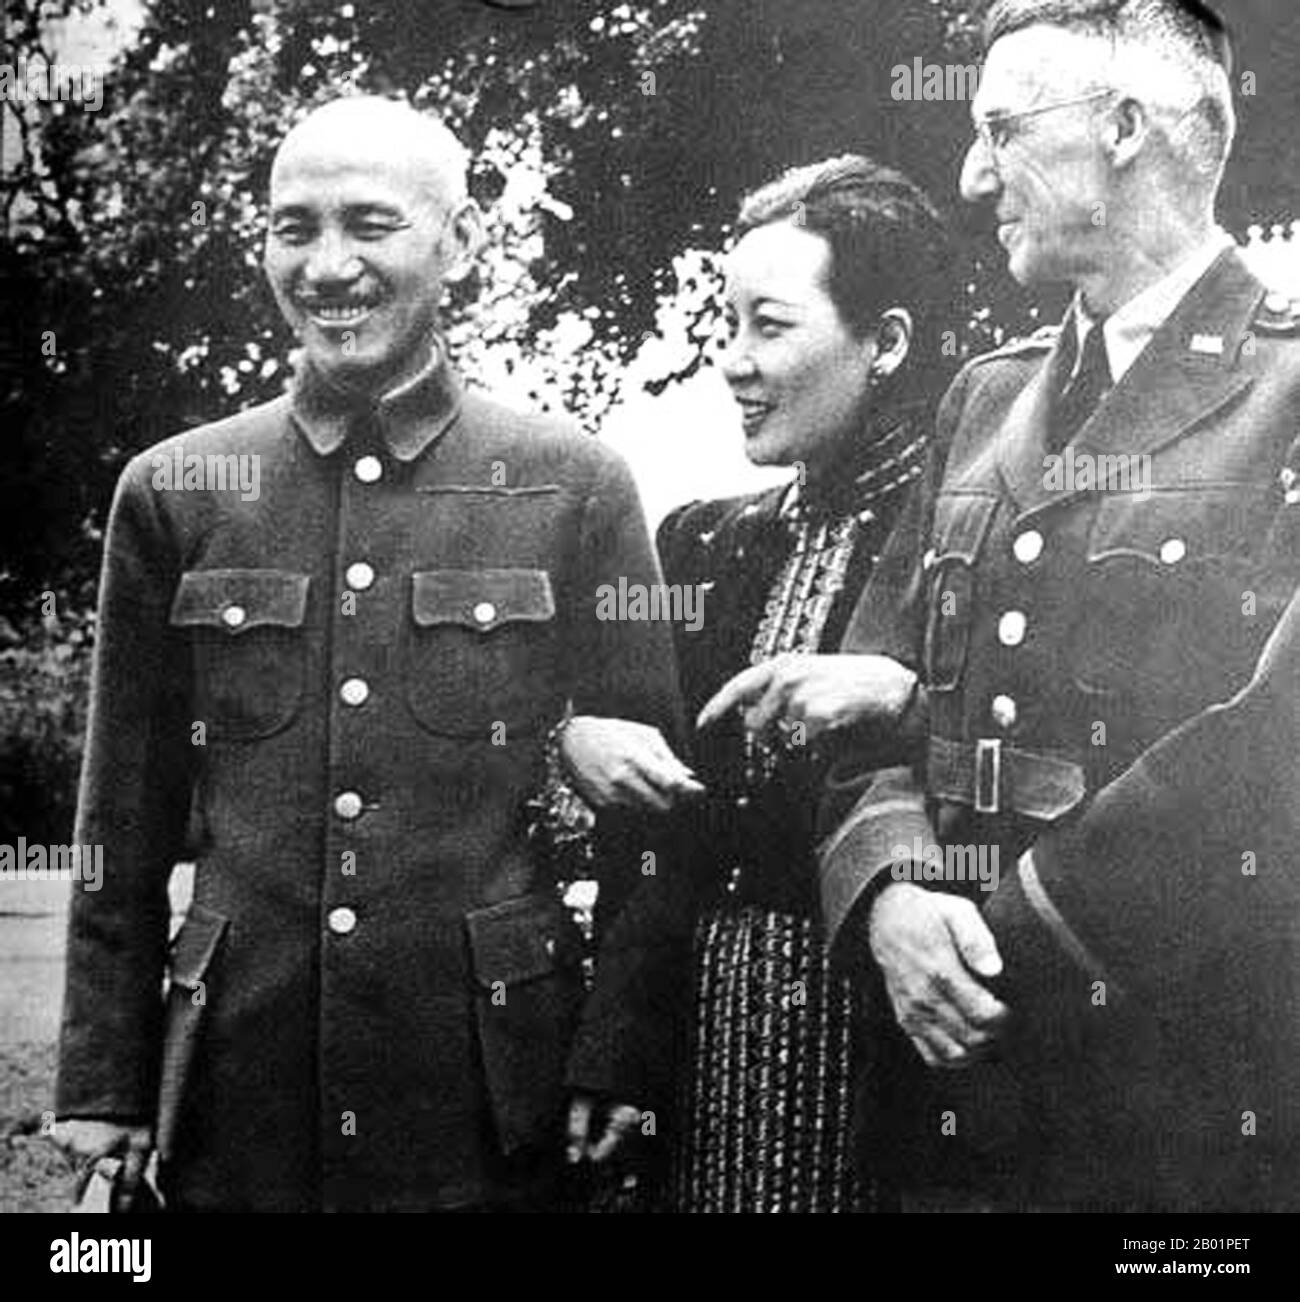 Birmanie/Chine/États-Unis : Chiang Kai Shek, Soong May Ling et 'Vinegar Joe' Stilwell, Birmanie, 1942. Tchang Kaï-chek (31 octobre 1887 - 5 avril 1975) était un dirigeant politique et militaire de la Chine du 20e siècle. Il est connu sous le nom de Jiǎng Jièshí ou Jiǎng Zhōngzhèng en mandarin. Soong May-Ling/Mei-Ling (5 mars 1898 - 23 octobre 2003), également connue sous le nom de Madame Chiang Kai-shek, était la première dame de la République de Chine (ROC), l'épouse de l'ancien président Tchang Kai-shek. Le général Joseph Warren Stilwell (19 mars 1883 - 12 octobre 1946) est un général quatre étoiles de l'armée américaine connu pour son service dans le théâtre Chine-Birmanie-Inde. Banque D'Images